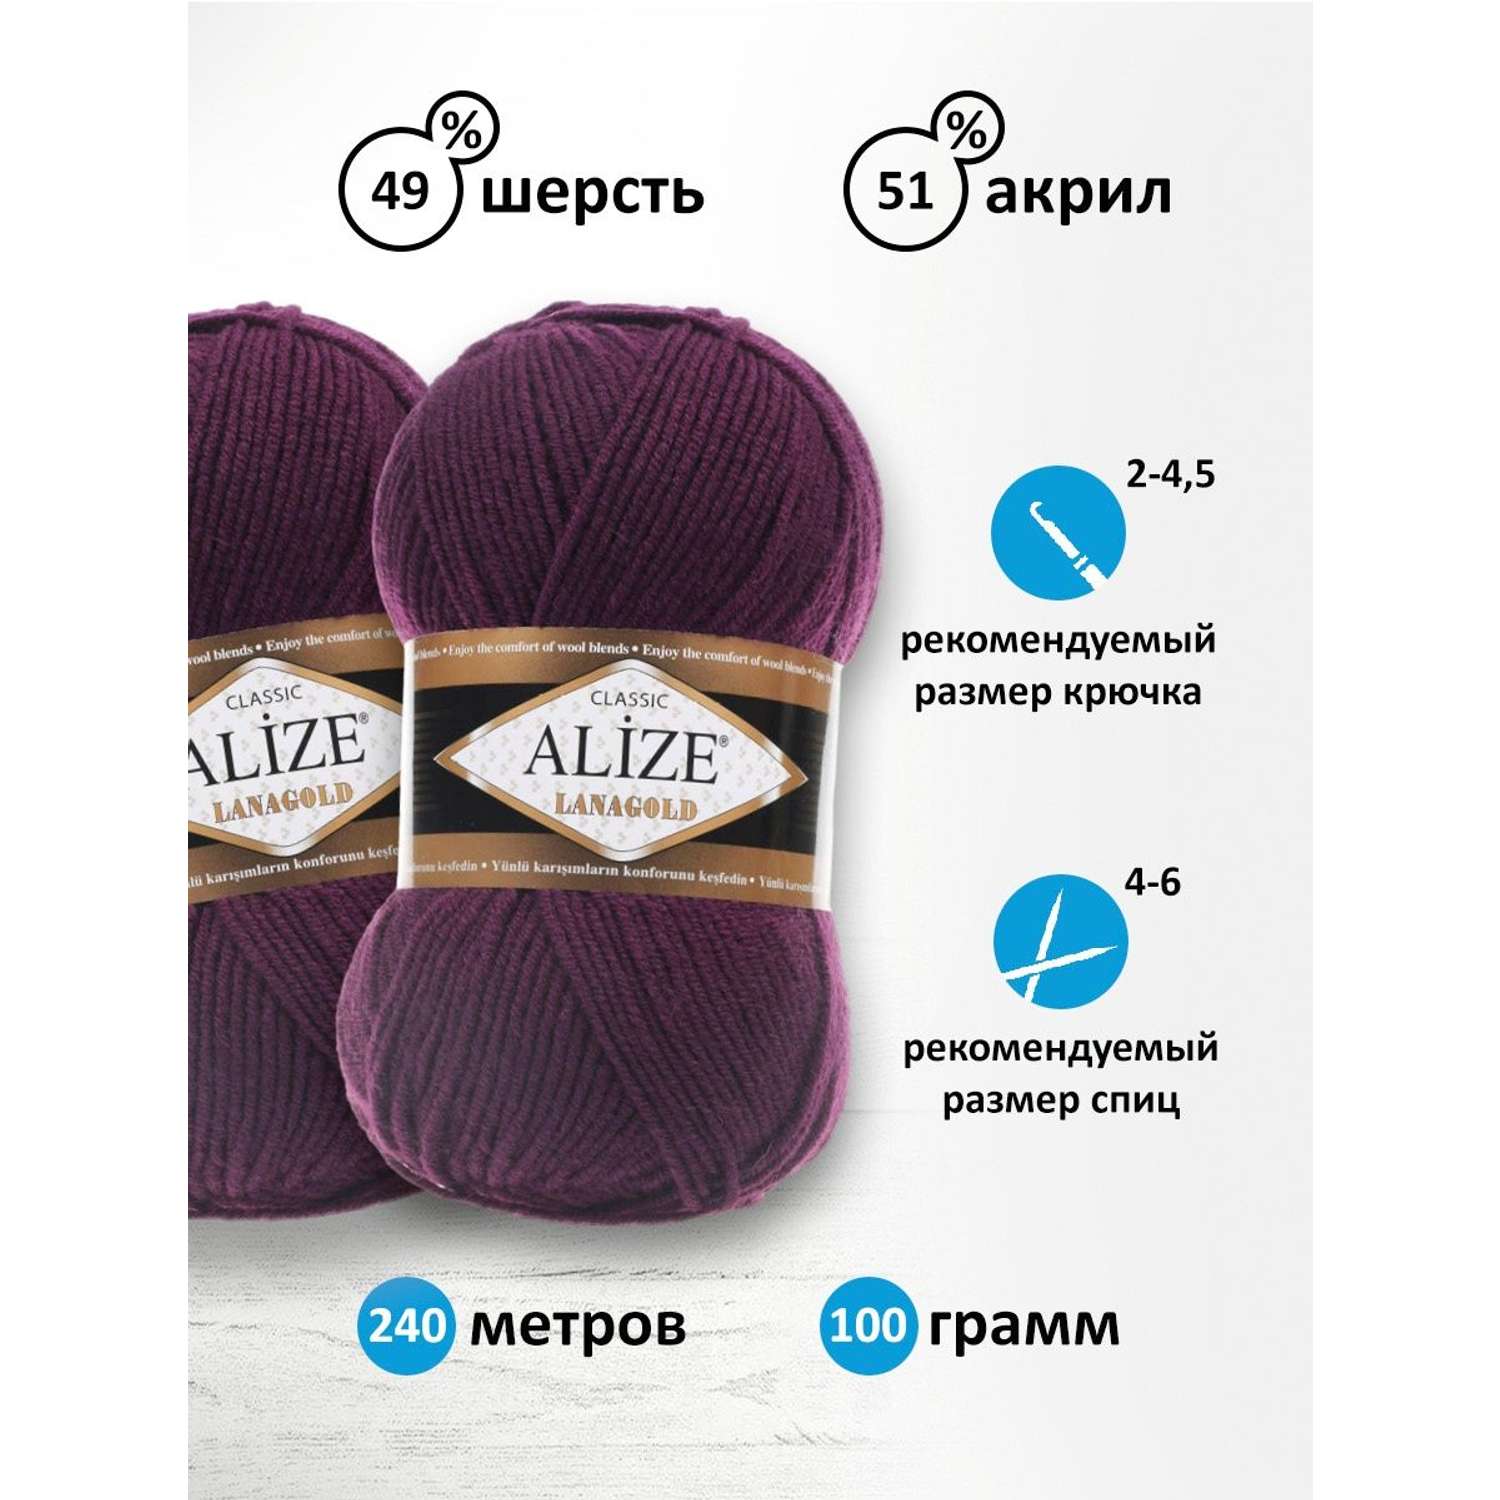 Пряжа Alize полушерстяная мягкая тонкая теплая Lanagold 100 гр 240 м 5 мотков 111 фиолетовый - фото 3